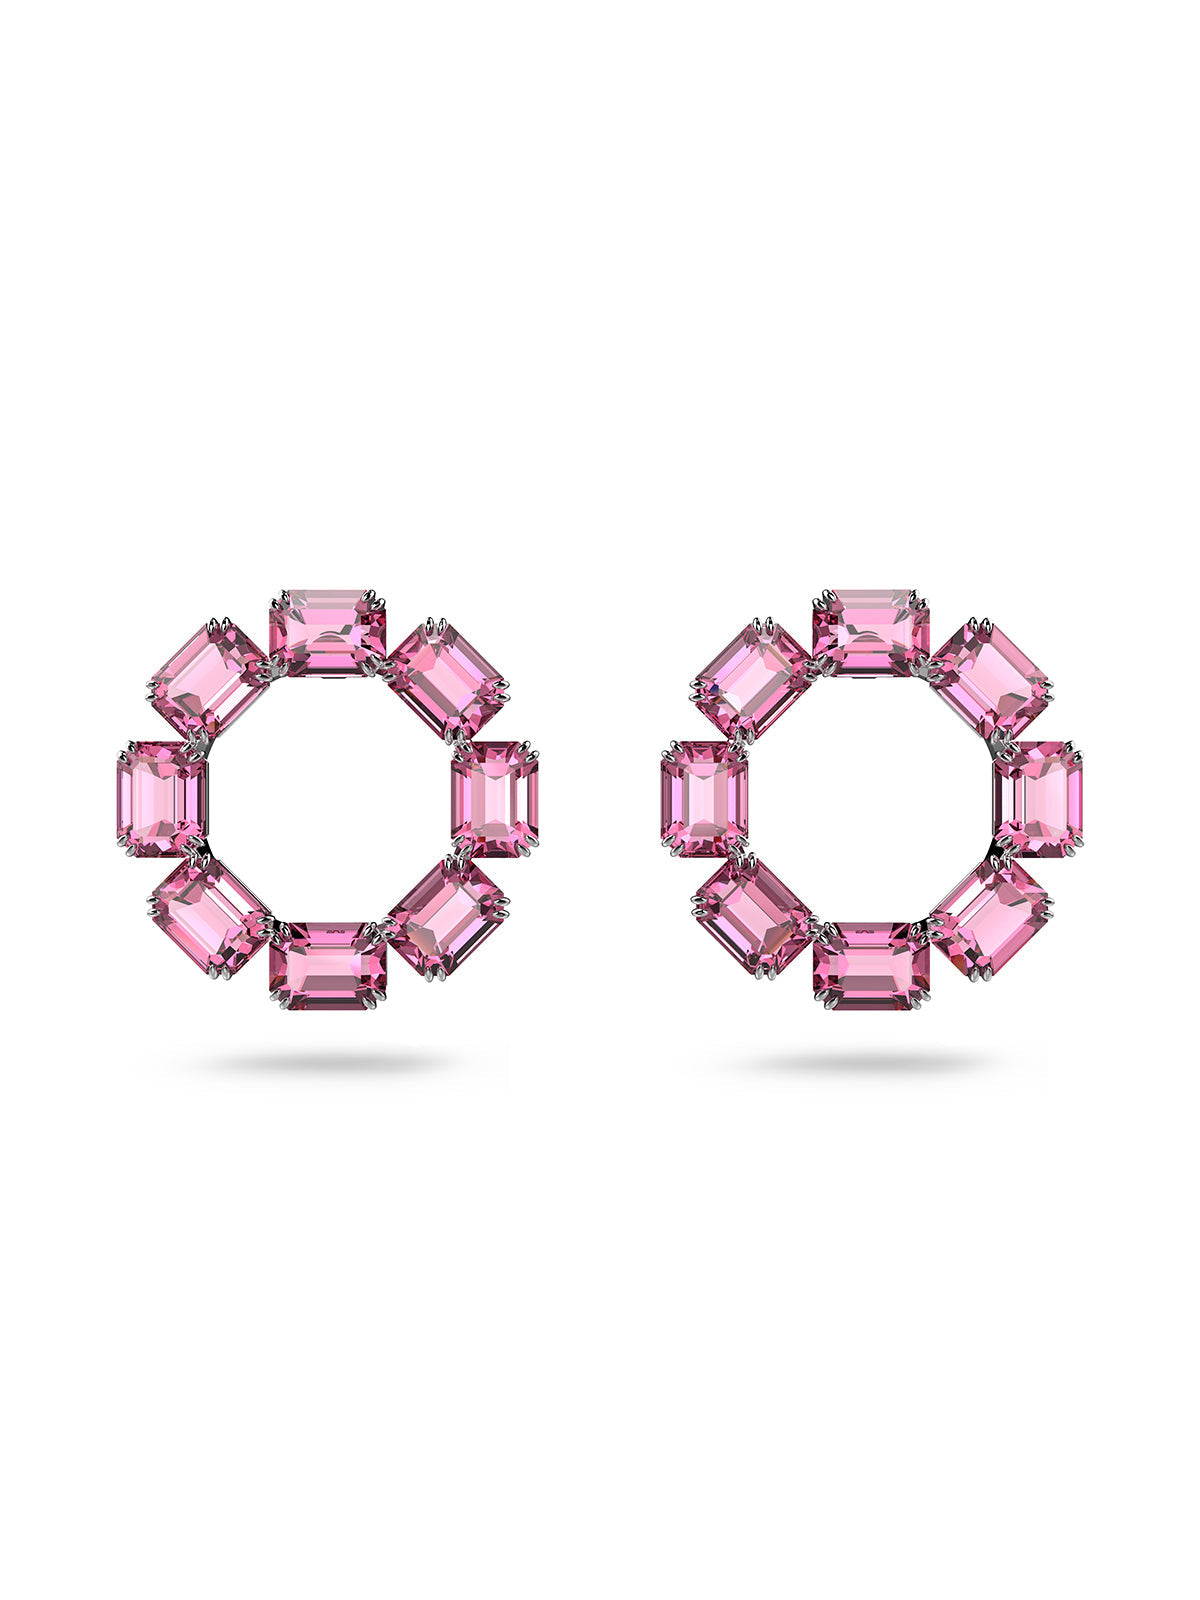 Swarovski Millenia Pink Crystal Stud Earrings 5614296